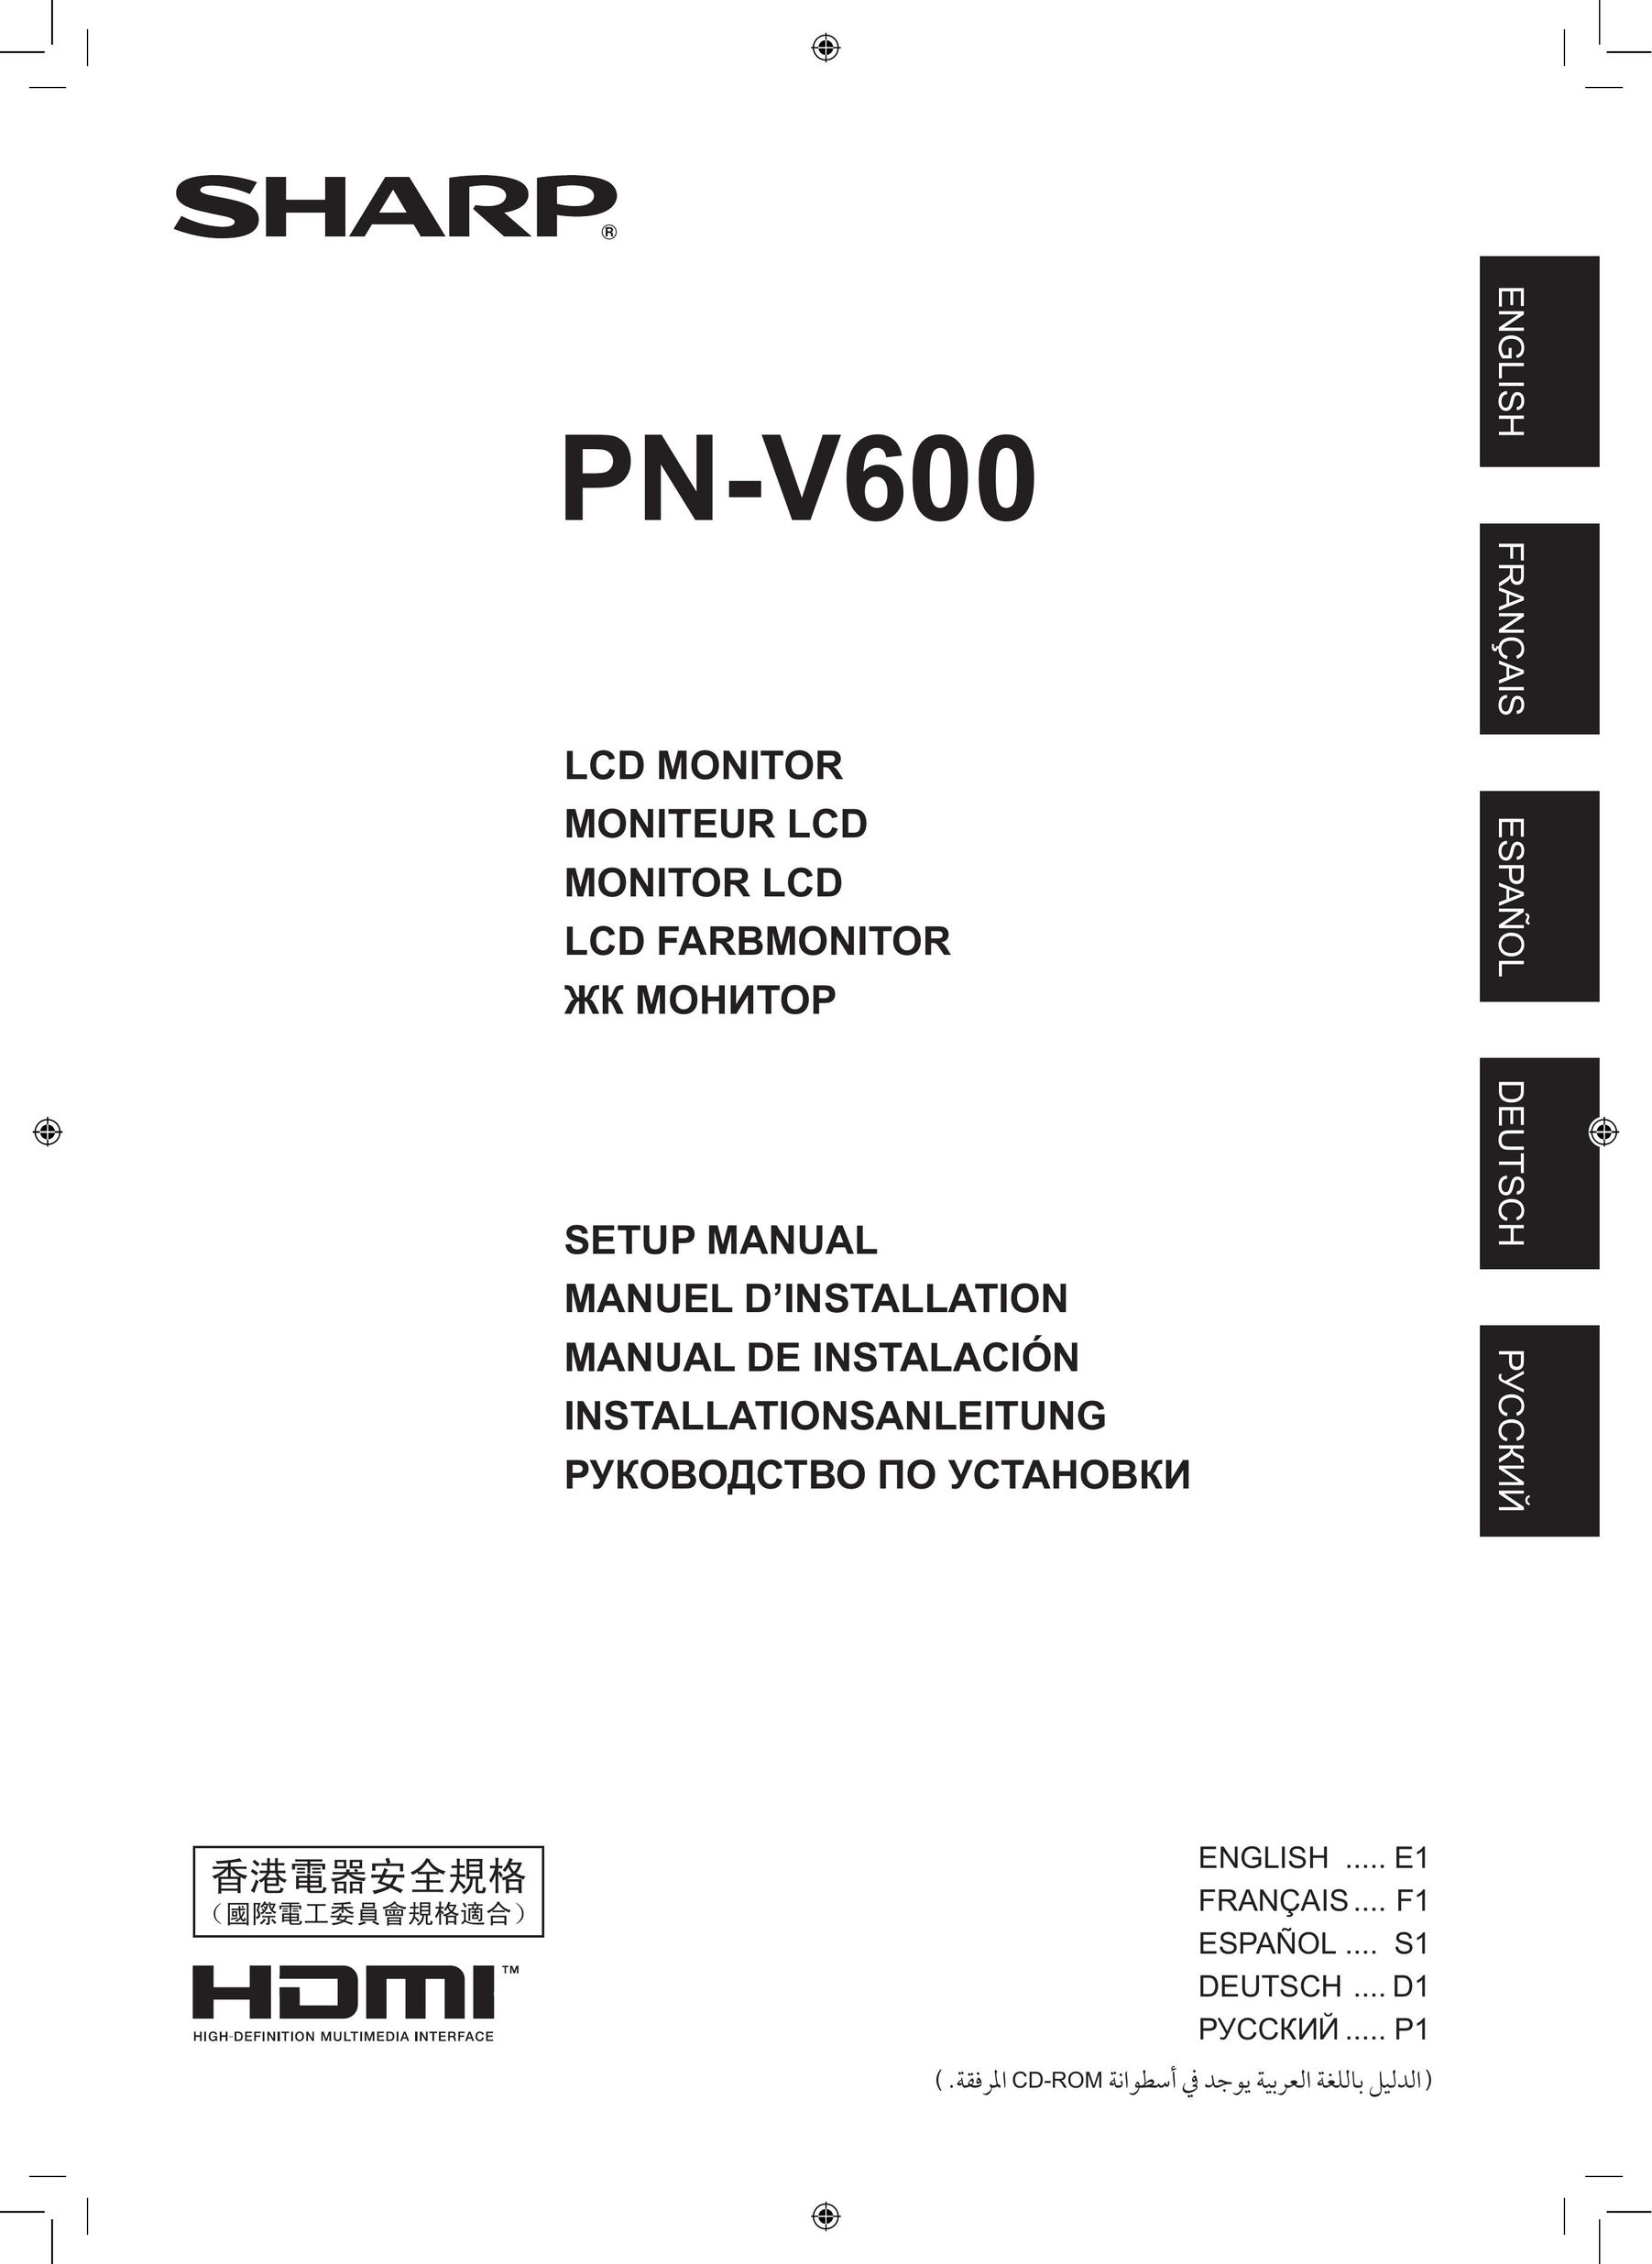 Sharp PN-V600 Computer Monitor User Manual